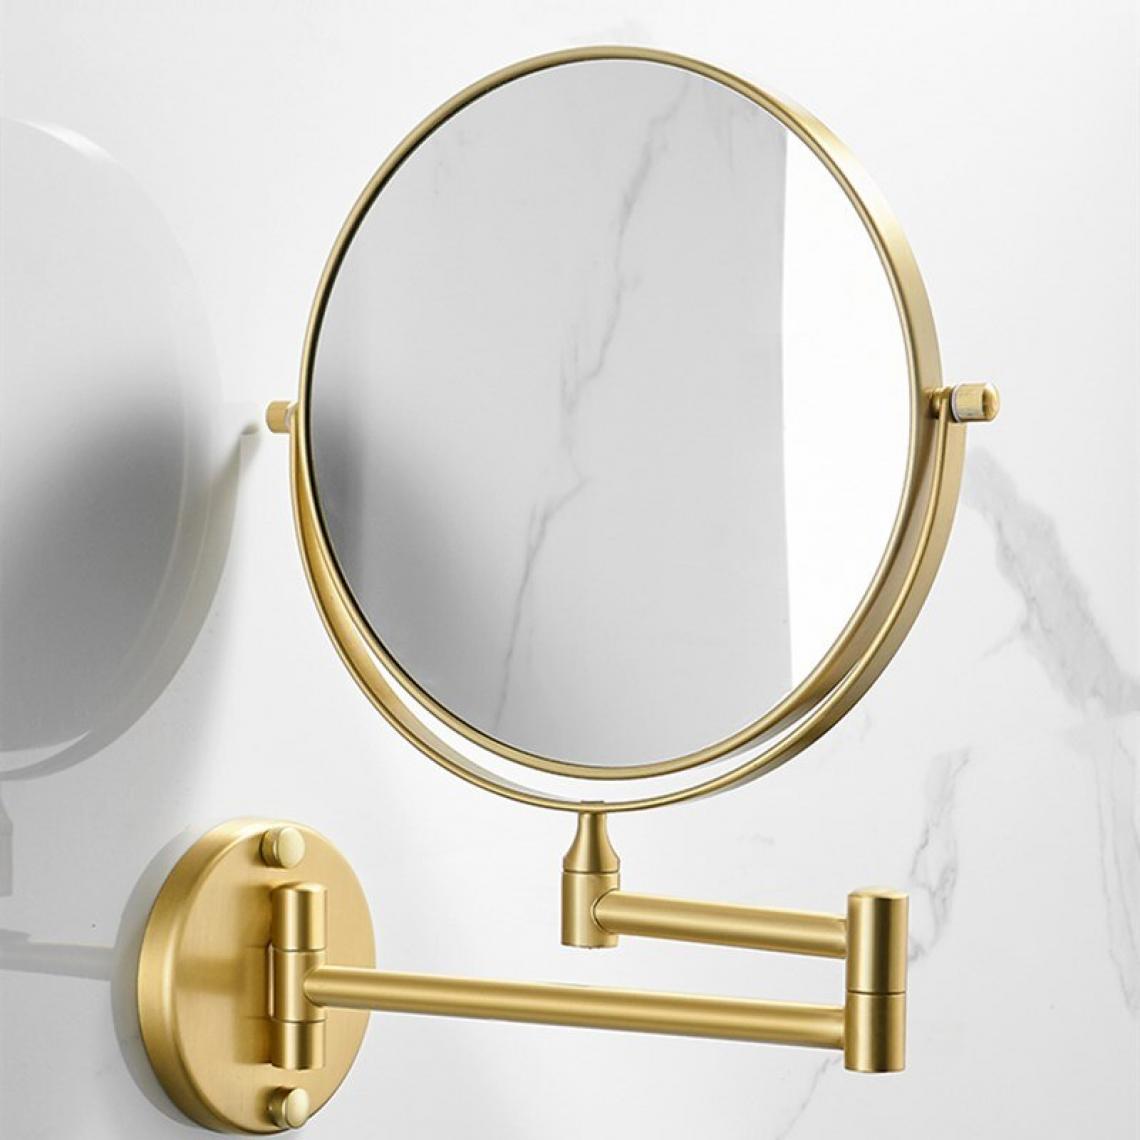 Universal - Miroir de maquillage miroir de salle de bains en cuivre et or 3 loupes X pliage rasage(Or) - Miroir de salle de bain